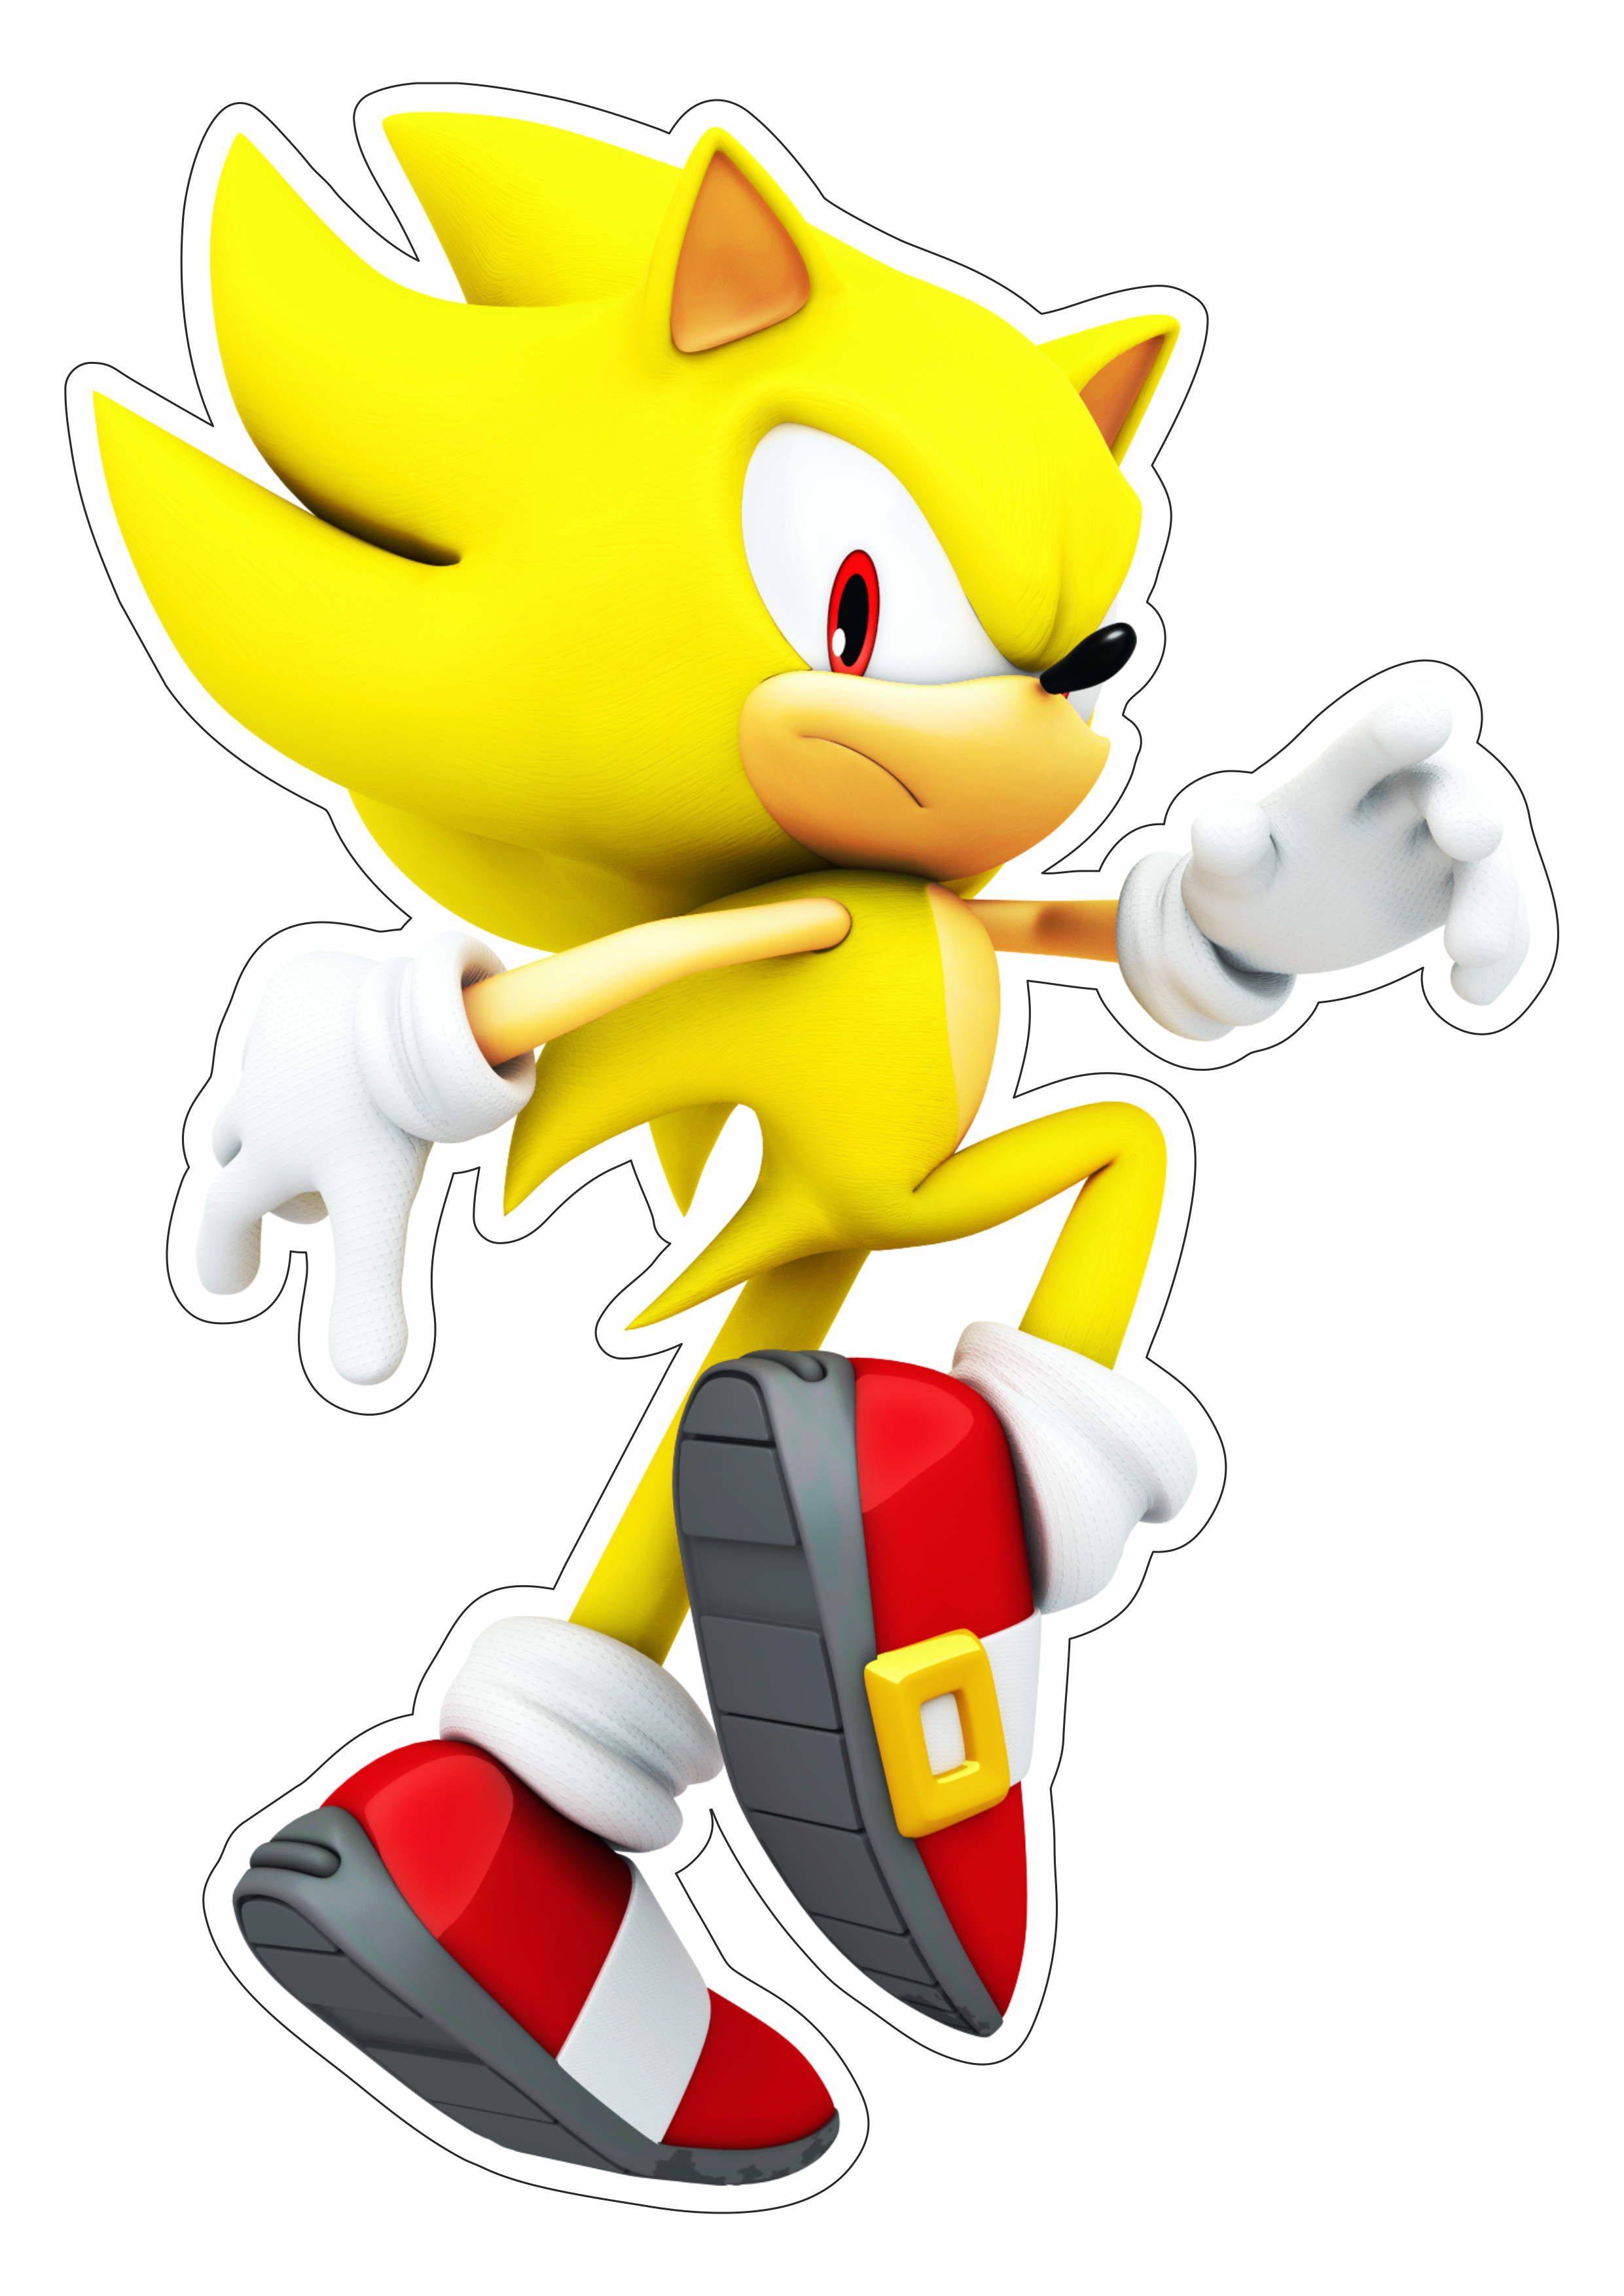 Sonic the hedgehog dourado ouriço personagem de game aventura infantil desenho para artes gráficas png